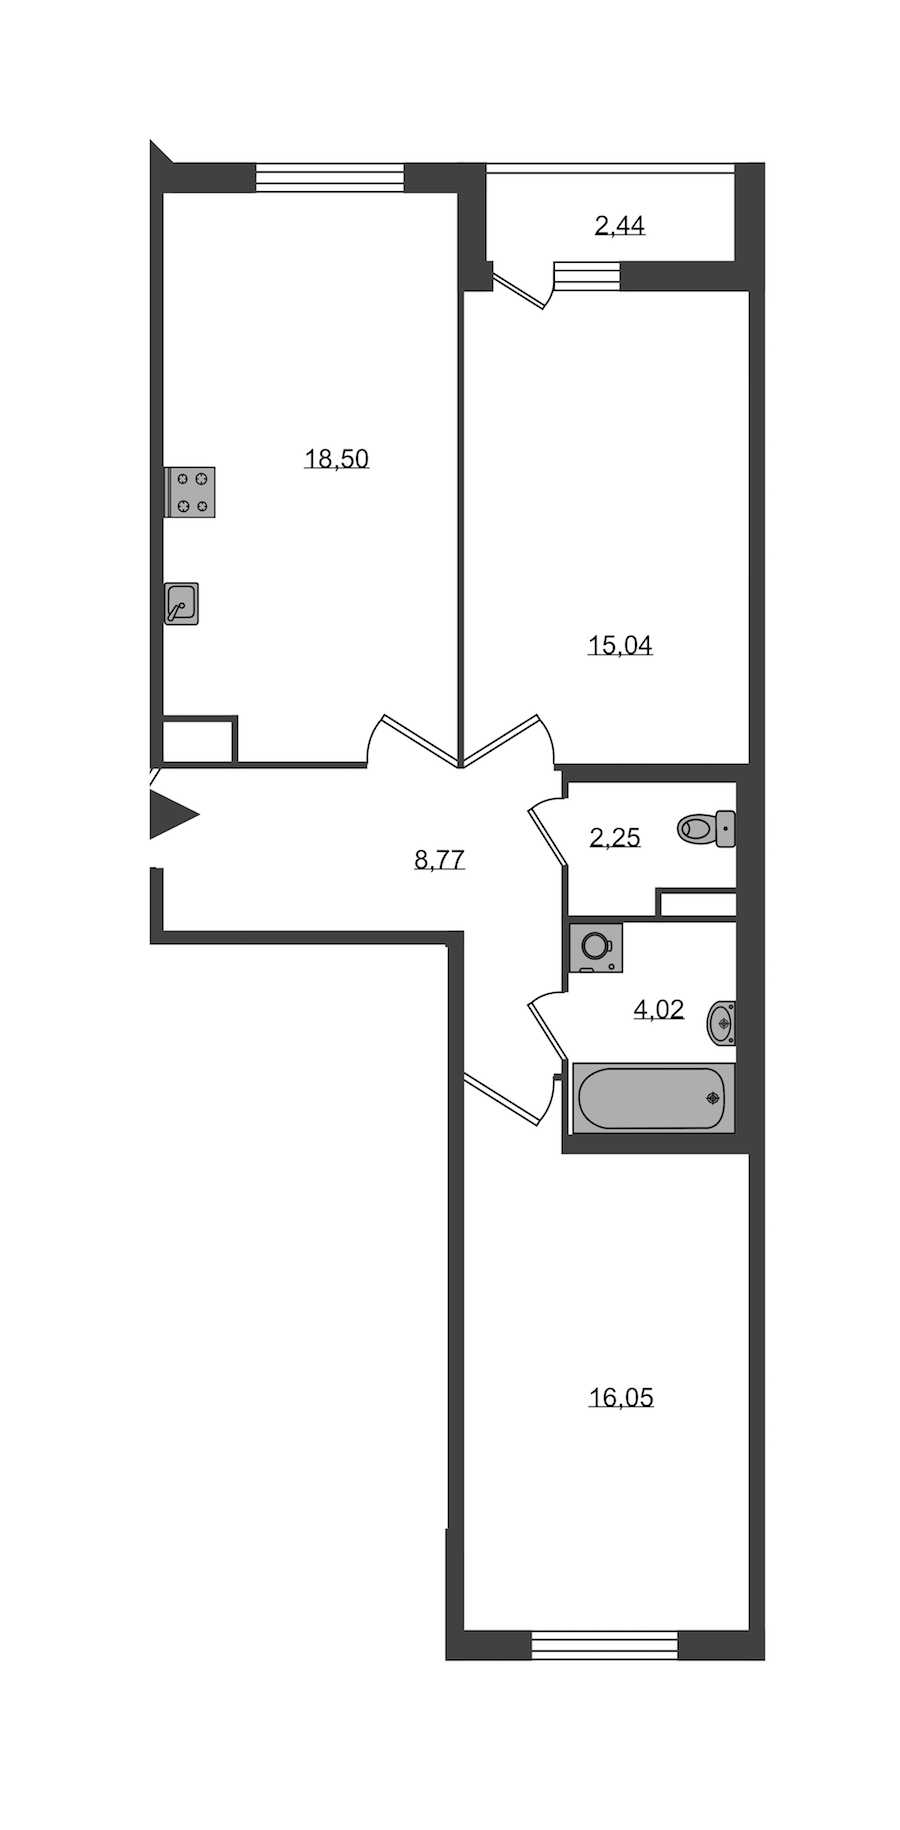 Двухкомнатная квартира в KVS: площадь 64.63 м2 , этаж: 2 – купить в Санкт-Петербурге